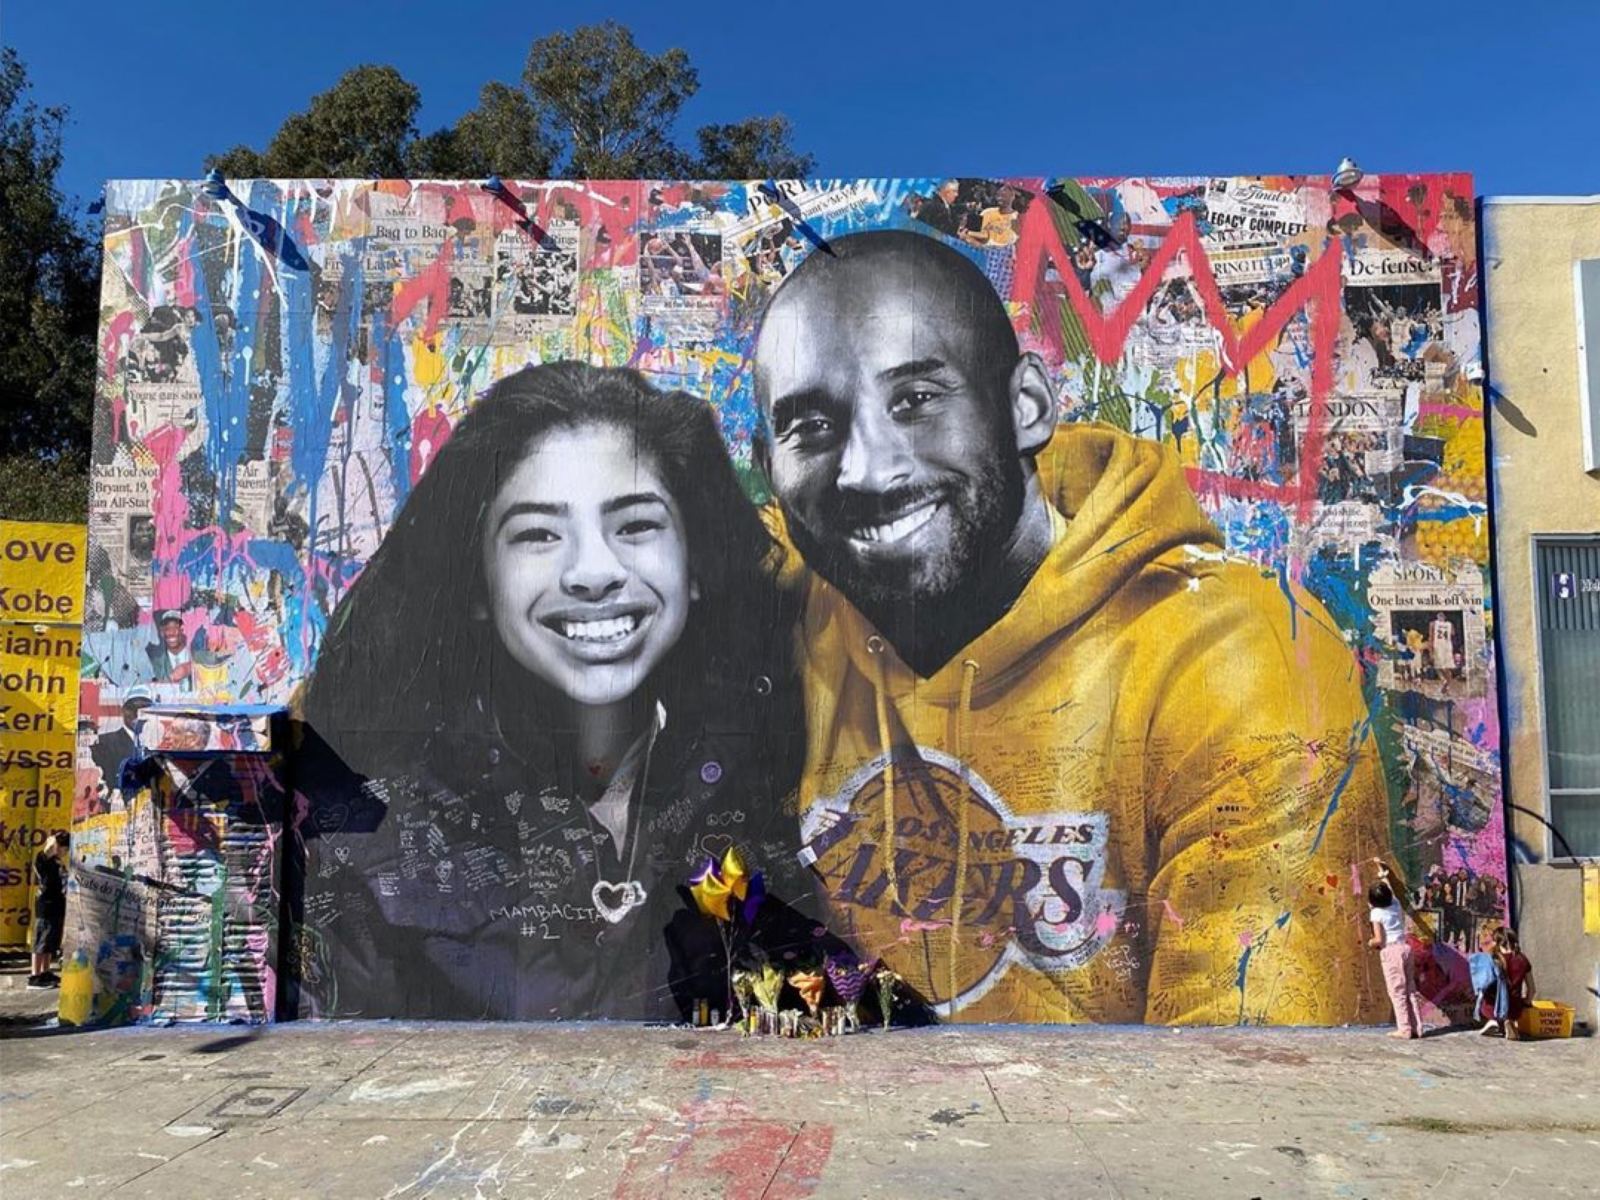 Kobe Bryant Murals Spared In L.A. Vandalism!!!